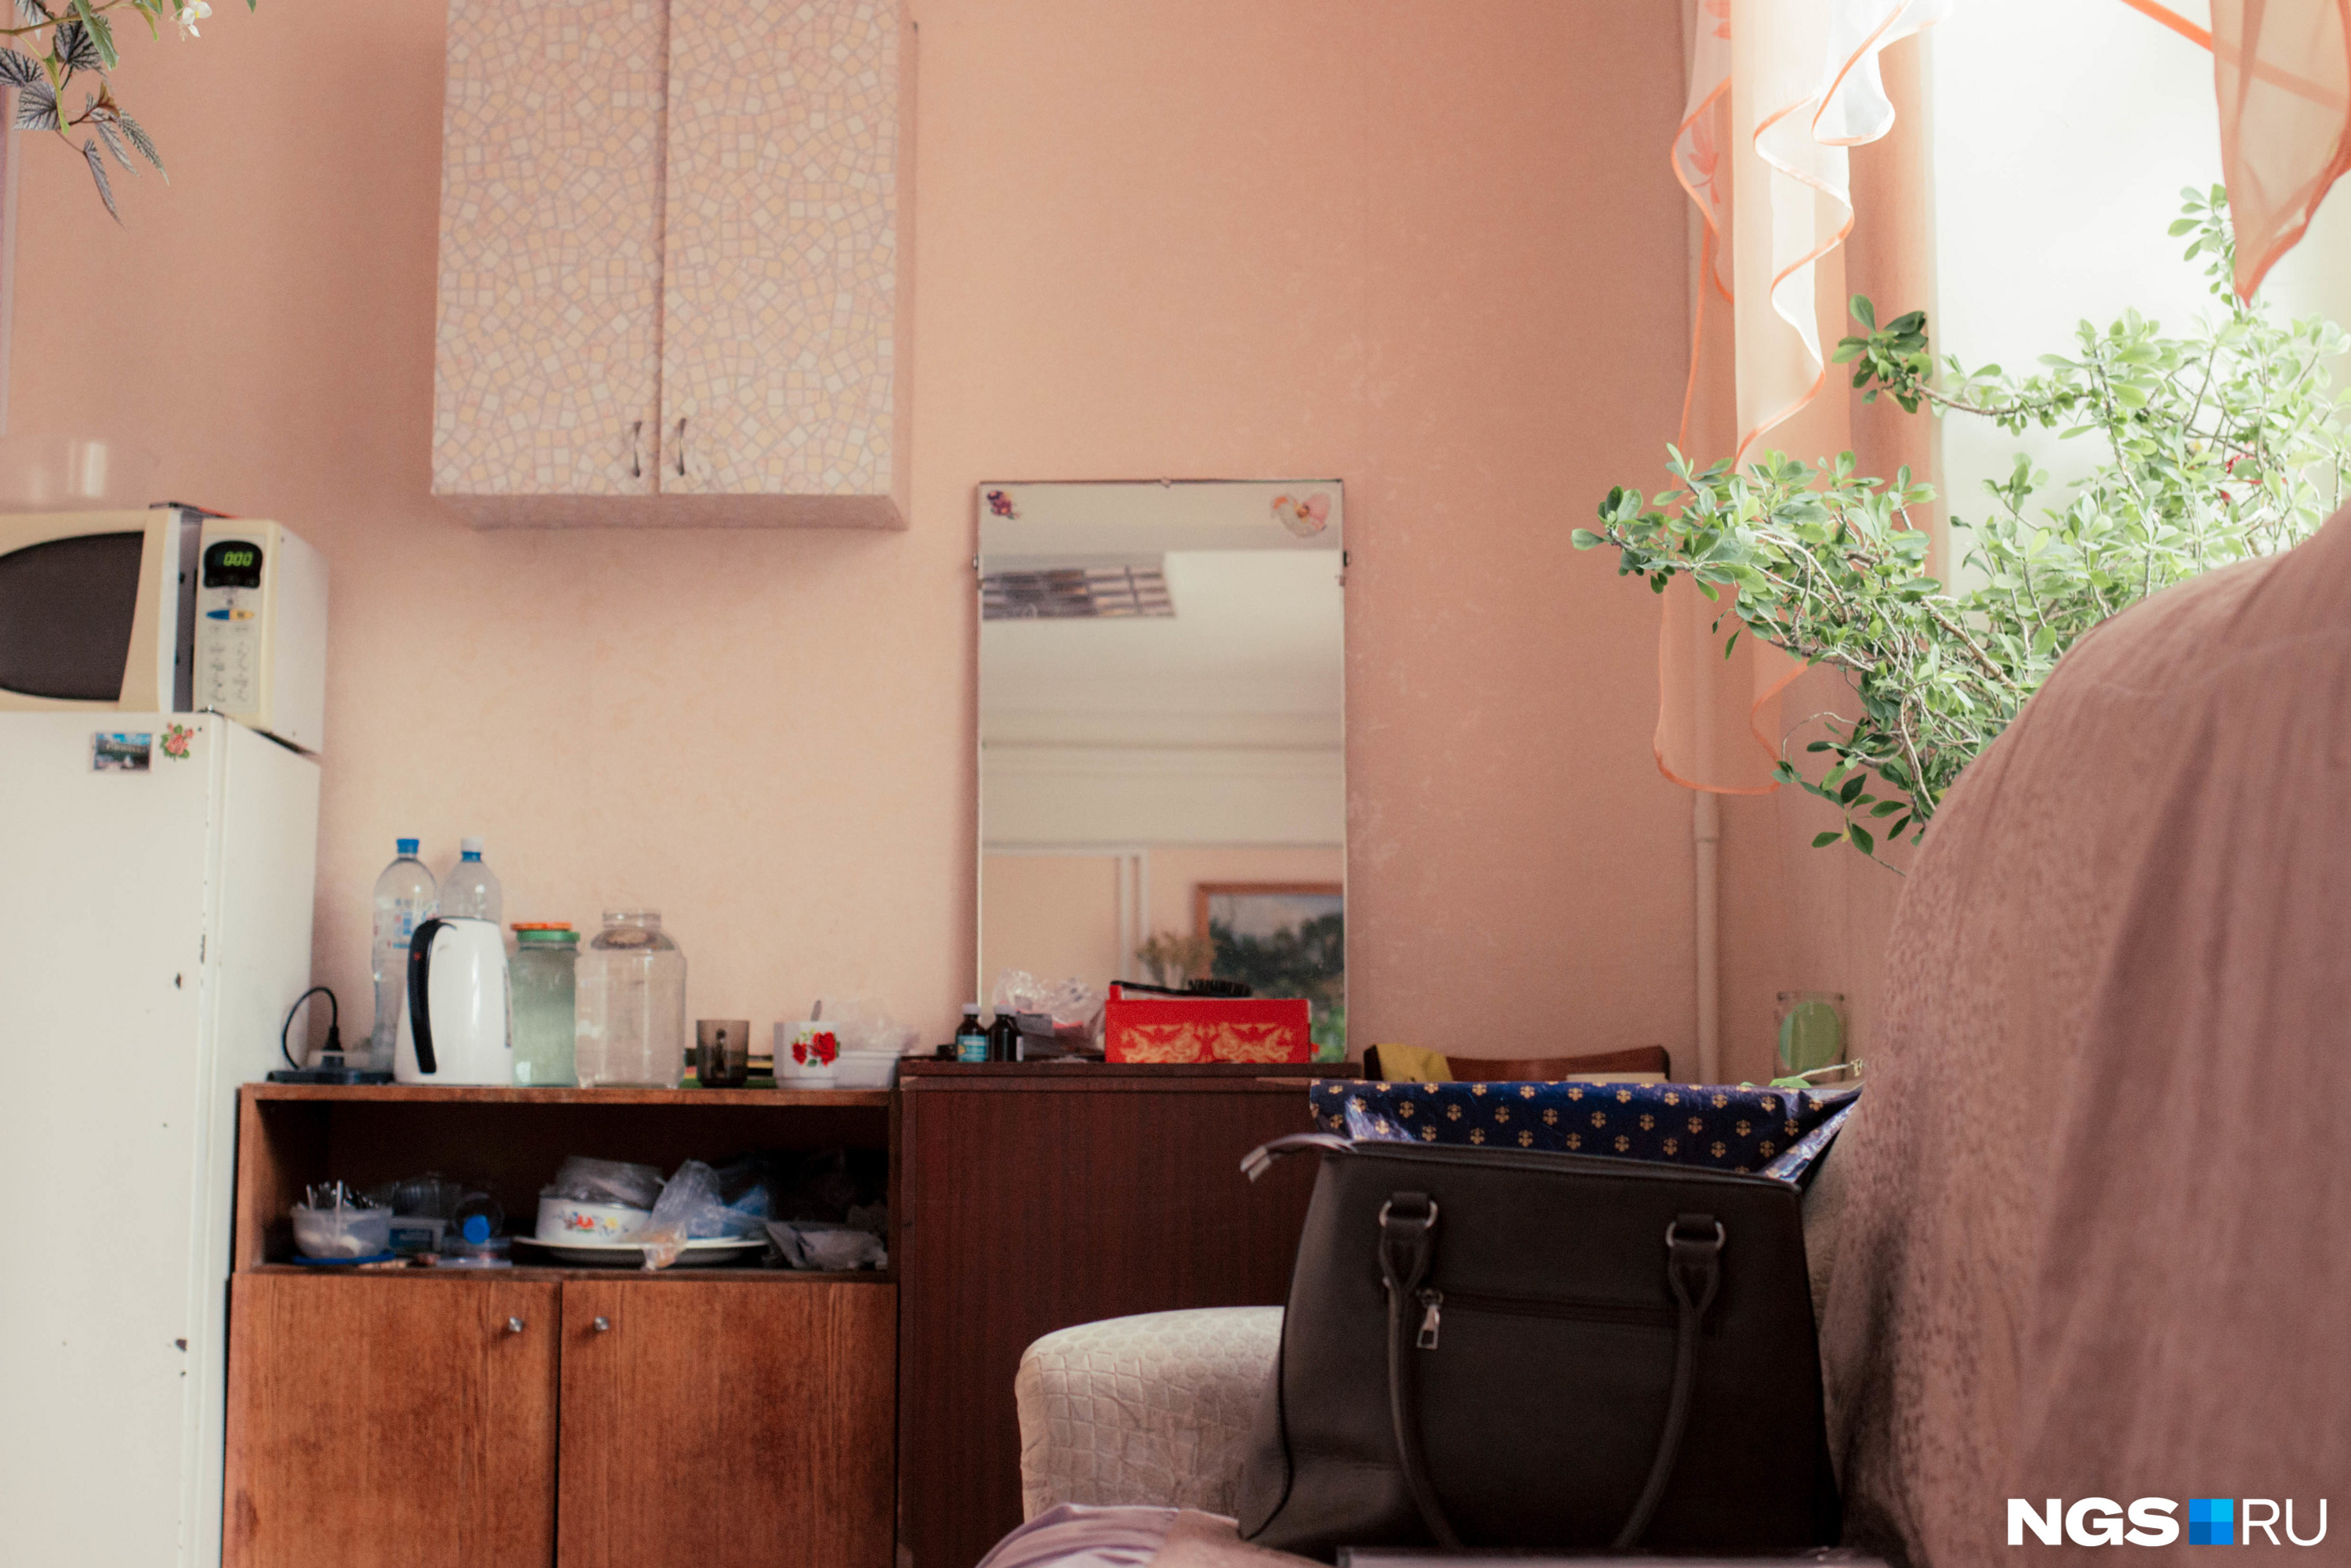 Валентина Ильинична отказалась фотографироваться («не хочу быть звездой»), но разрешила снять интерьер её рабочей комнаты